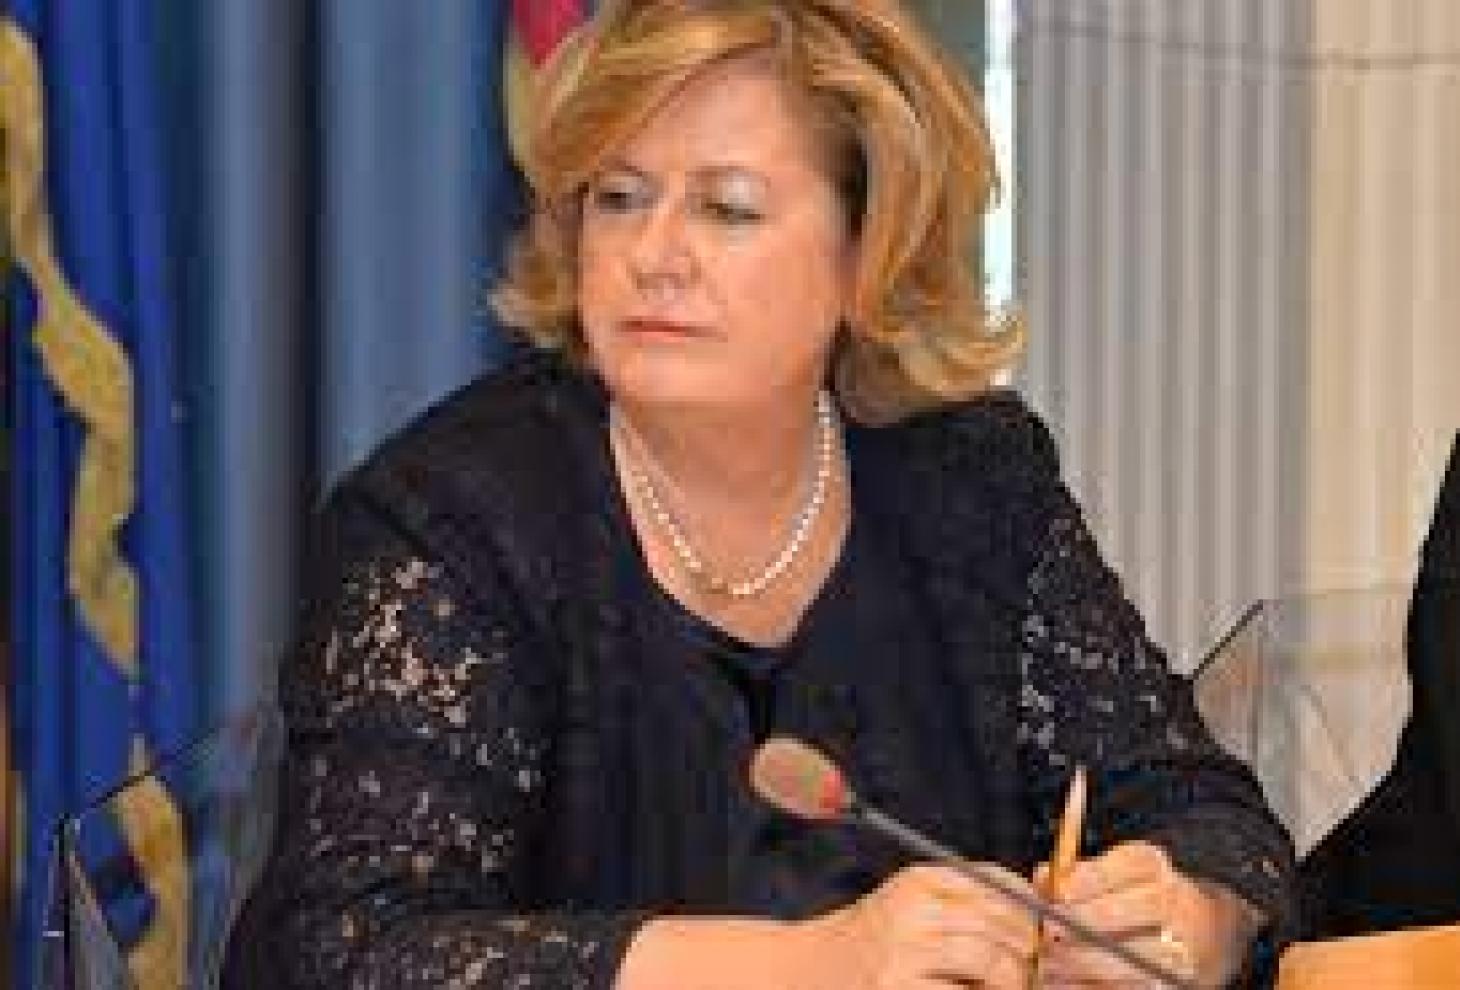 Nicoletta Verì